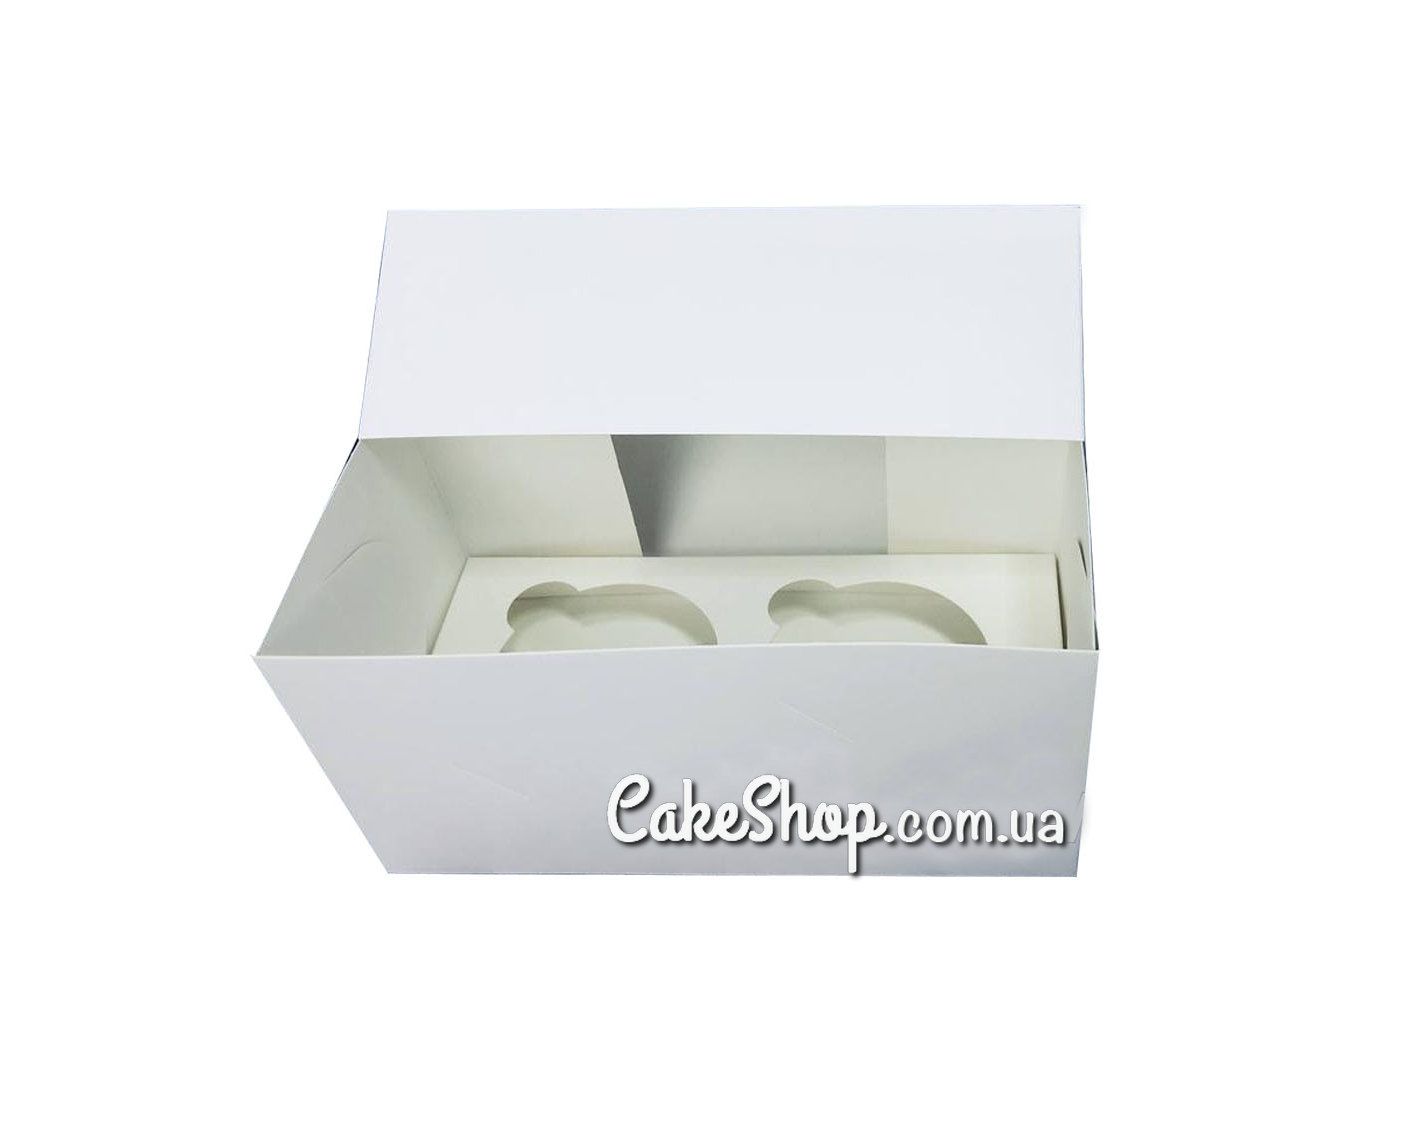 ⋗ Коробка на 2 кекса с бабочками Белая, 17х9х9 см купить в Украине ➛ CakeShop.com.ua, фото